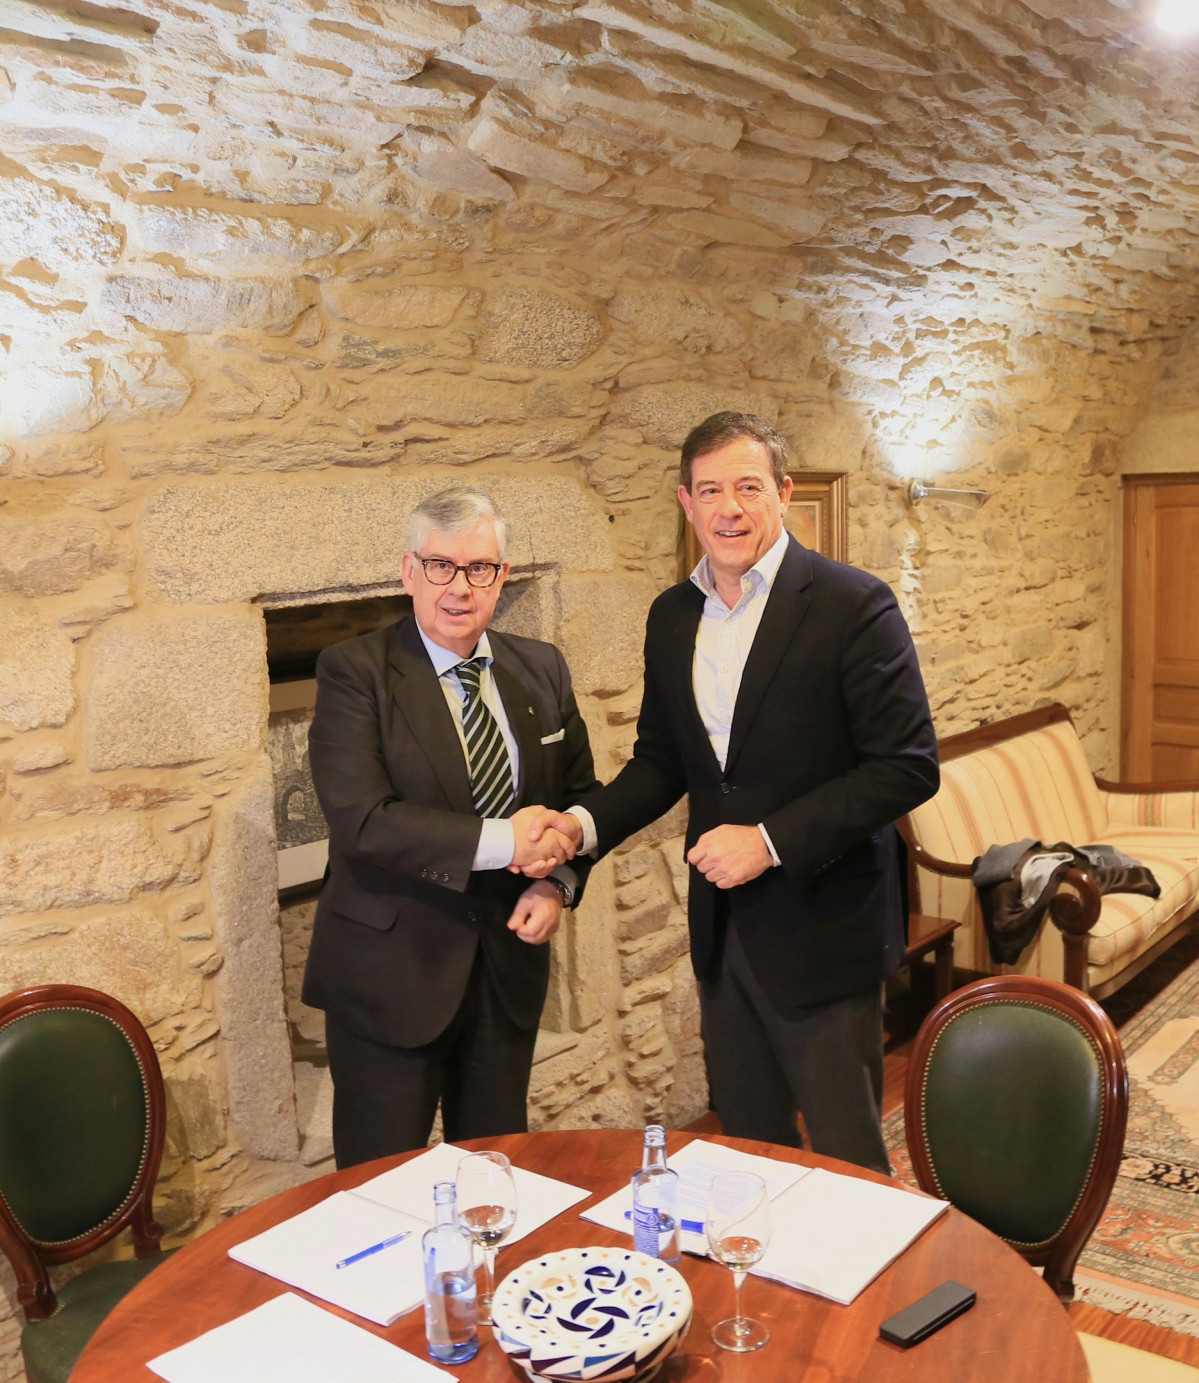 El presidente de la Confederación de Empresarios de Galicia, Juan Manuel Vieites, se reúne con el candidato del PSdeG a la presidencia de la Xunta, José Ramón Gómez Besteiro.